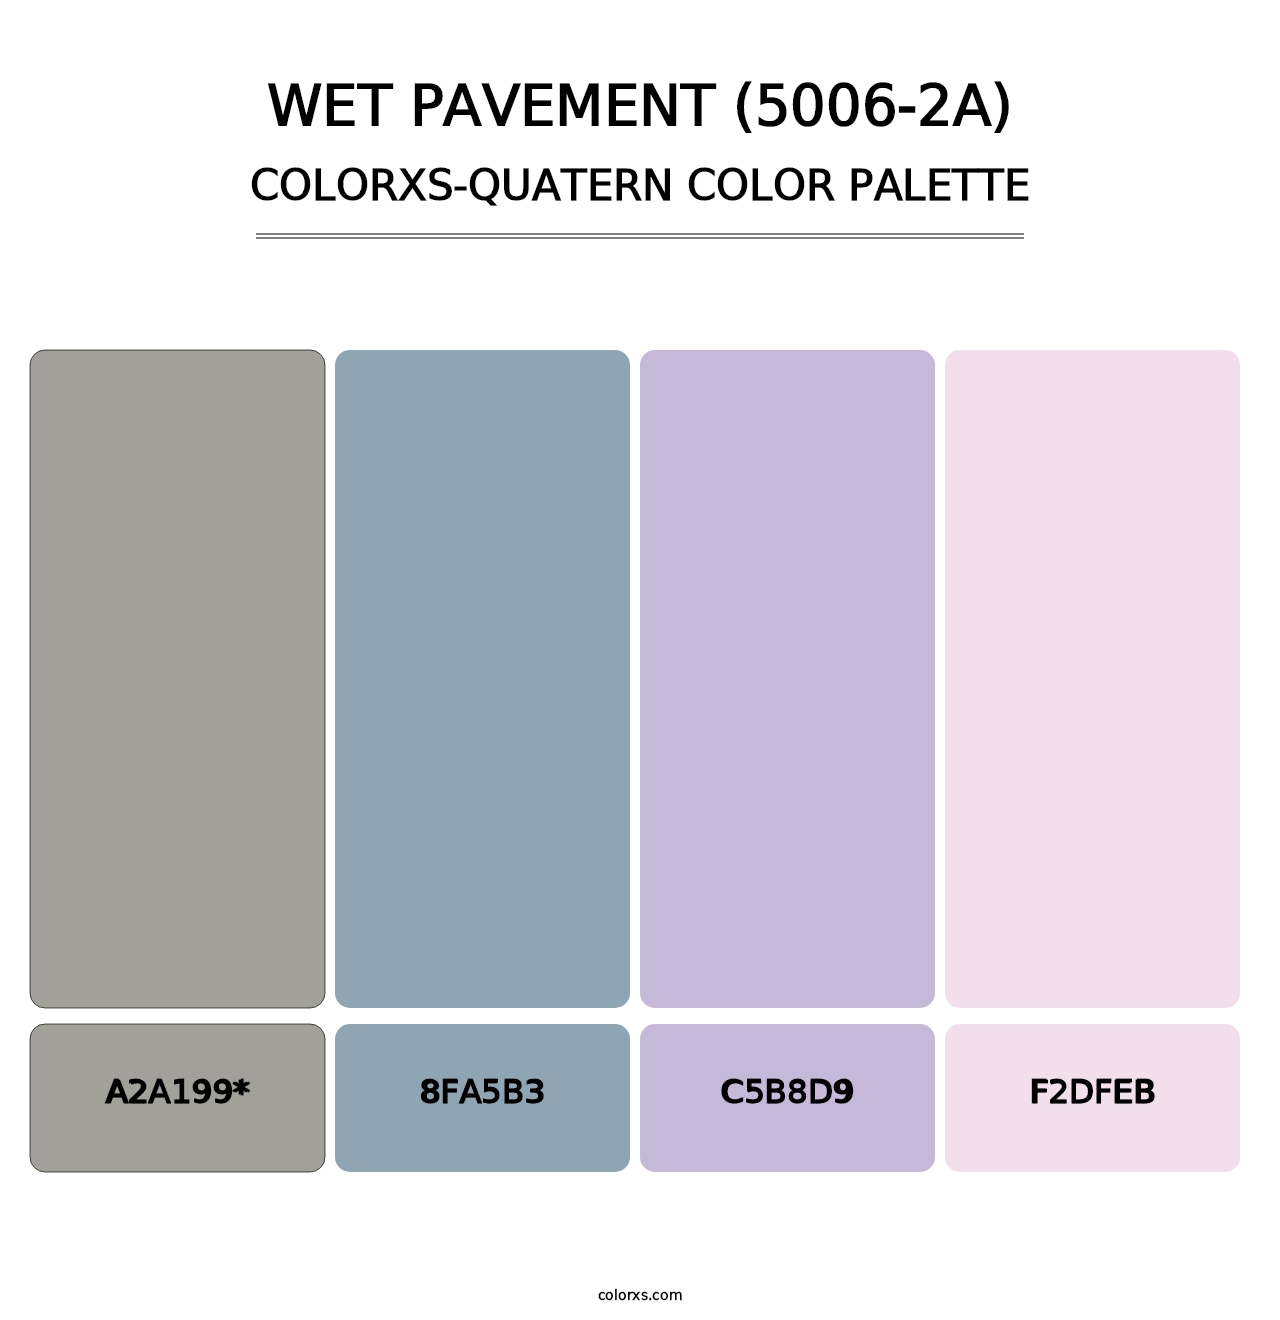 Wet Pavement (5006-2A) - Colorxs Quatern Palette